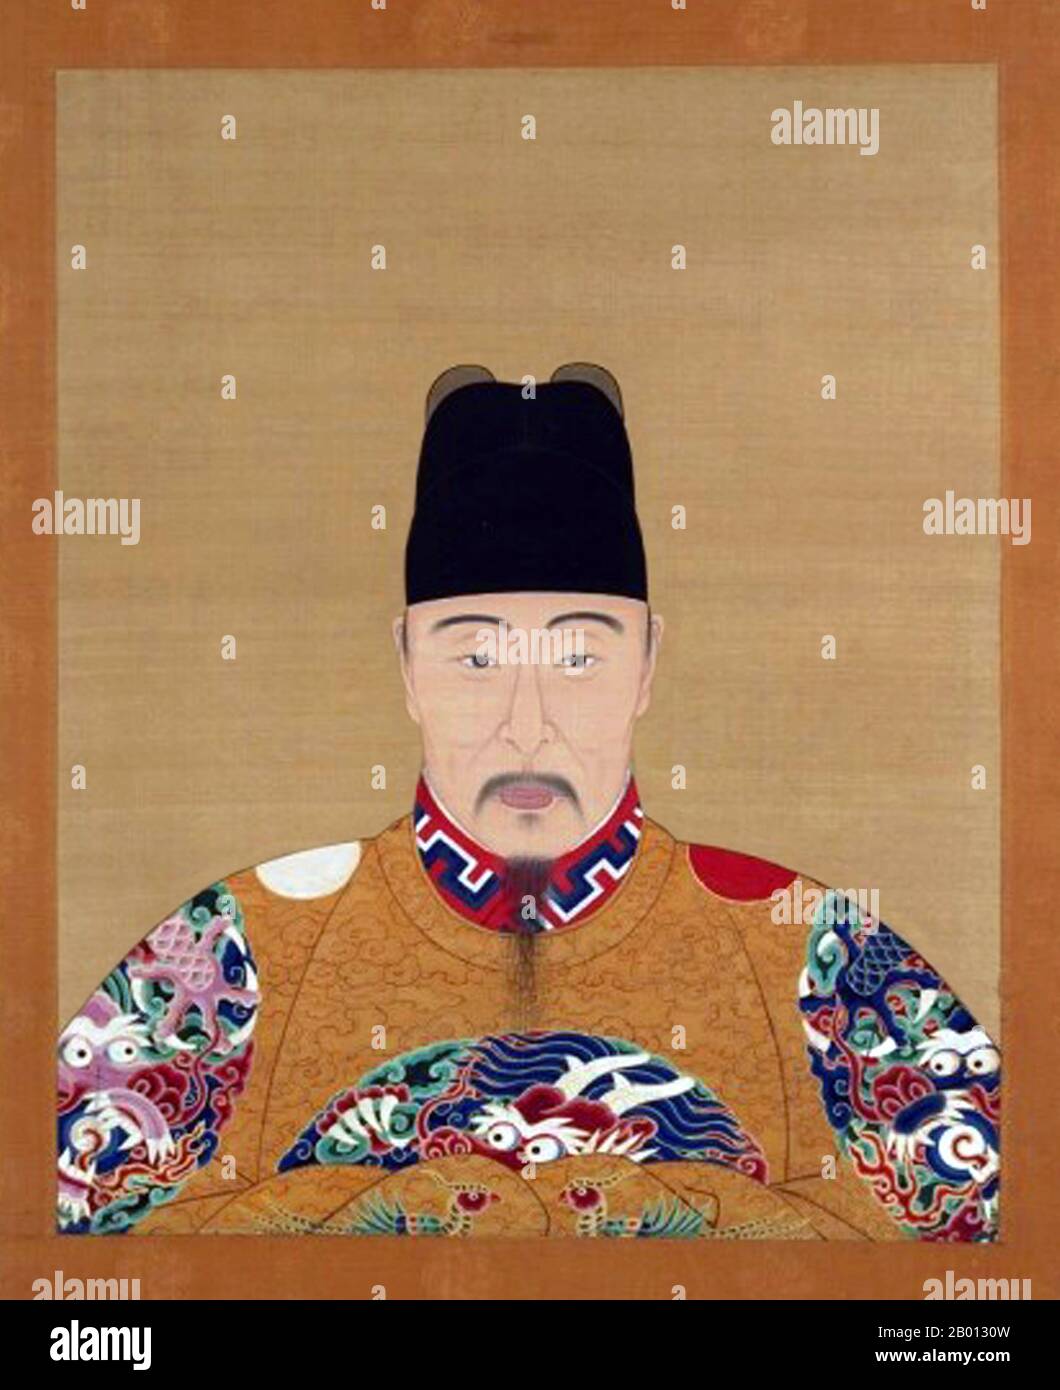 emperador-jiajing-duodecimo-gobernante-de-la-dinastia-ming-r-1521-1567-nombre-personal-zhu-houcong-zhu-houc-ng-nombre-postumo-sudi-sudi-nombre-del-templo-shizong-shiz-ng-nombre-del-reinado-ming-jiajing-ming-jiajing-el-emperador-jiajing-fue-el-emperador-de-la-xii-dinastia-ming-de-china-que-goberno-desde-1521-hasta-1567-su-nombre-de-epoca-significa-tranquilidad-admirable-despues-de-45-anos-en-el-trono-el-segundo-reinado-mas-largo-de-la-dinastia-ming-el-emperador-jiajing-murio-en-1567-posiblemente-debido-a-una-sobredosis-de-mercurio-y-fue-sucedido-por-su-hijo-el-emperador-longqing-aunque-su-largo-gobierno-le-dio-a-la-dinastia-una-era-de-estabilidad-jiaj-2b0130w.jpg